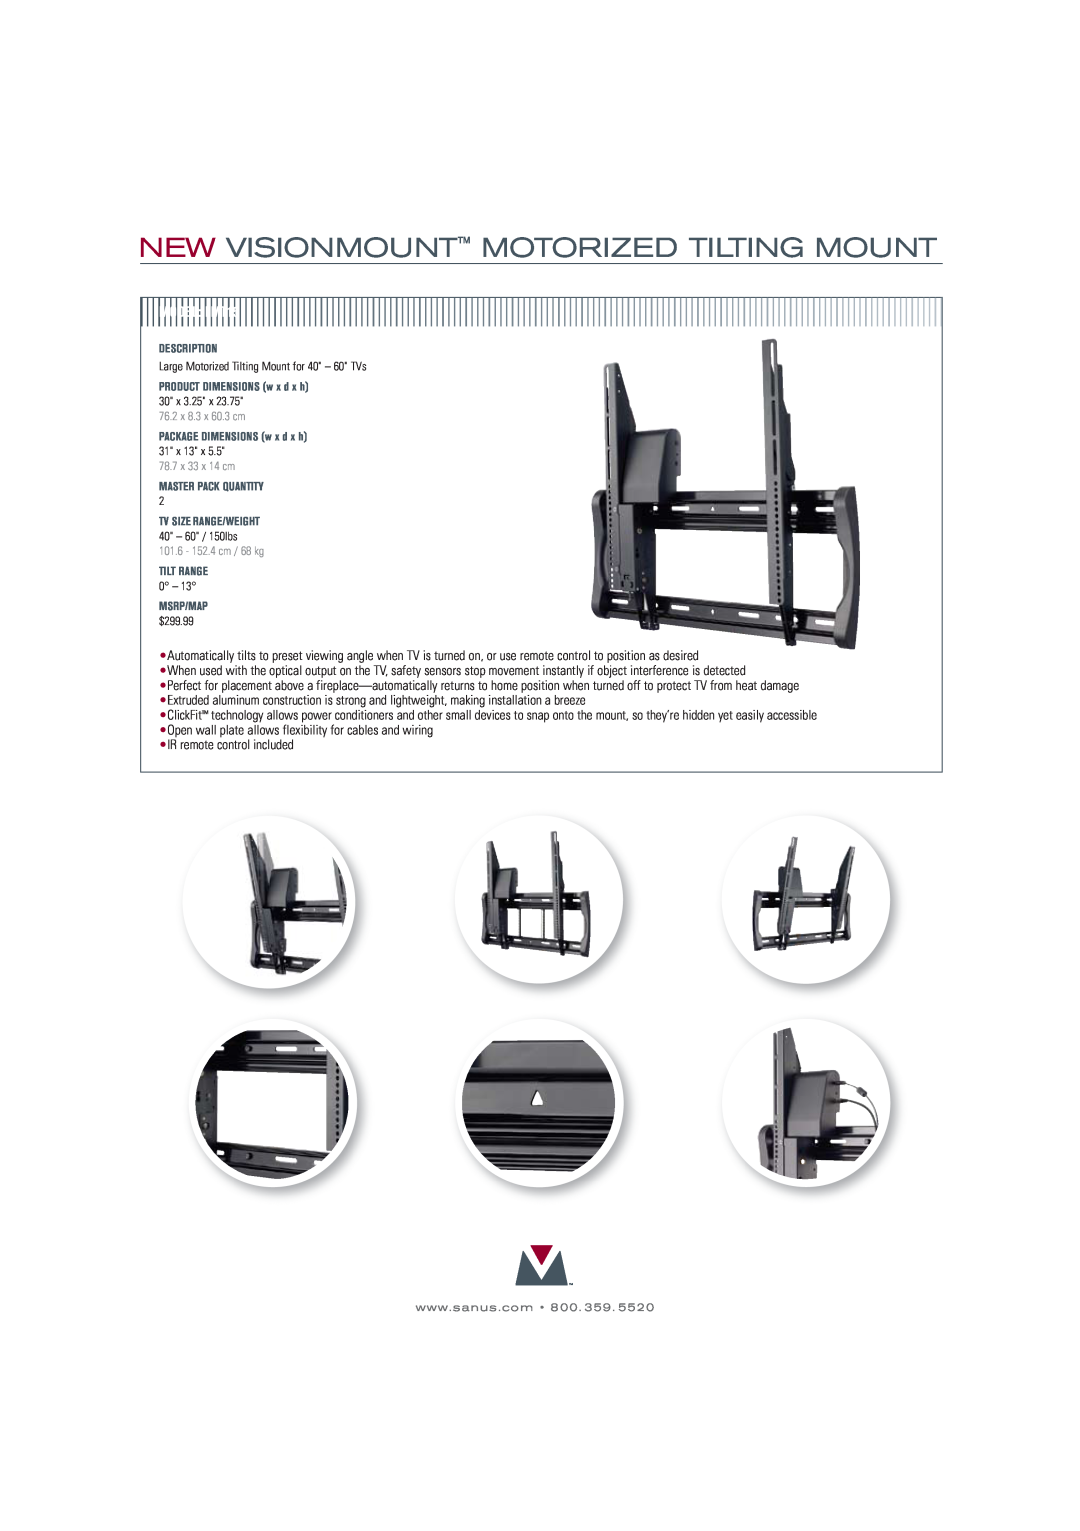 Sanus Systems LMT15-B1 manual New Visionmount Motorized Tilting Mount, MODELLMT15 